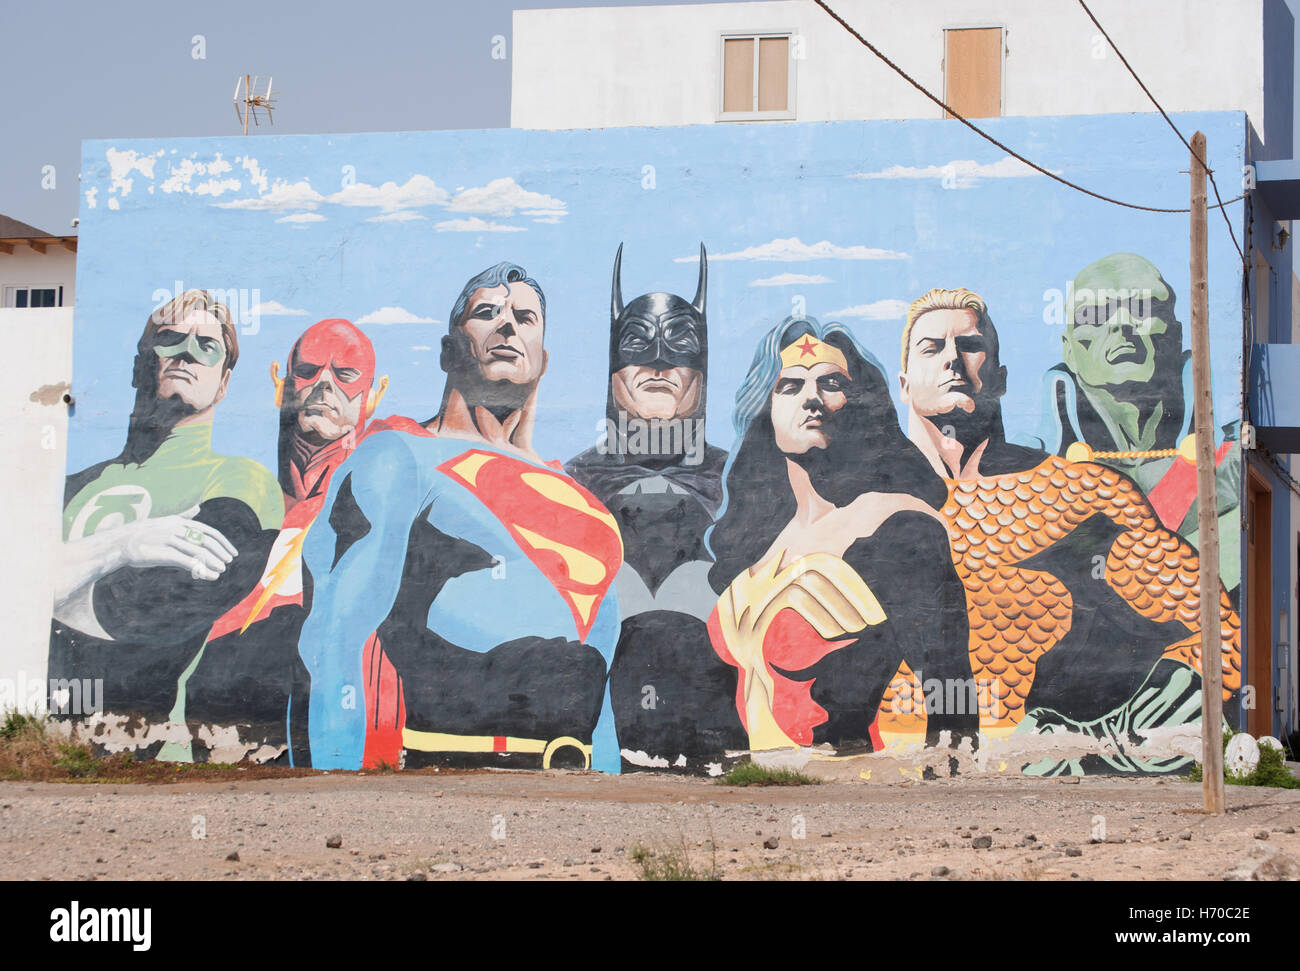 Fuerteventura Isole Canarie Spagna: un grande murale con supereroi su una parete in Puerto del Rosario, la capitale dell'isola Foto Stock